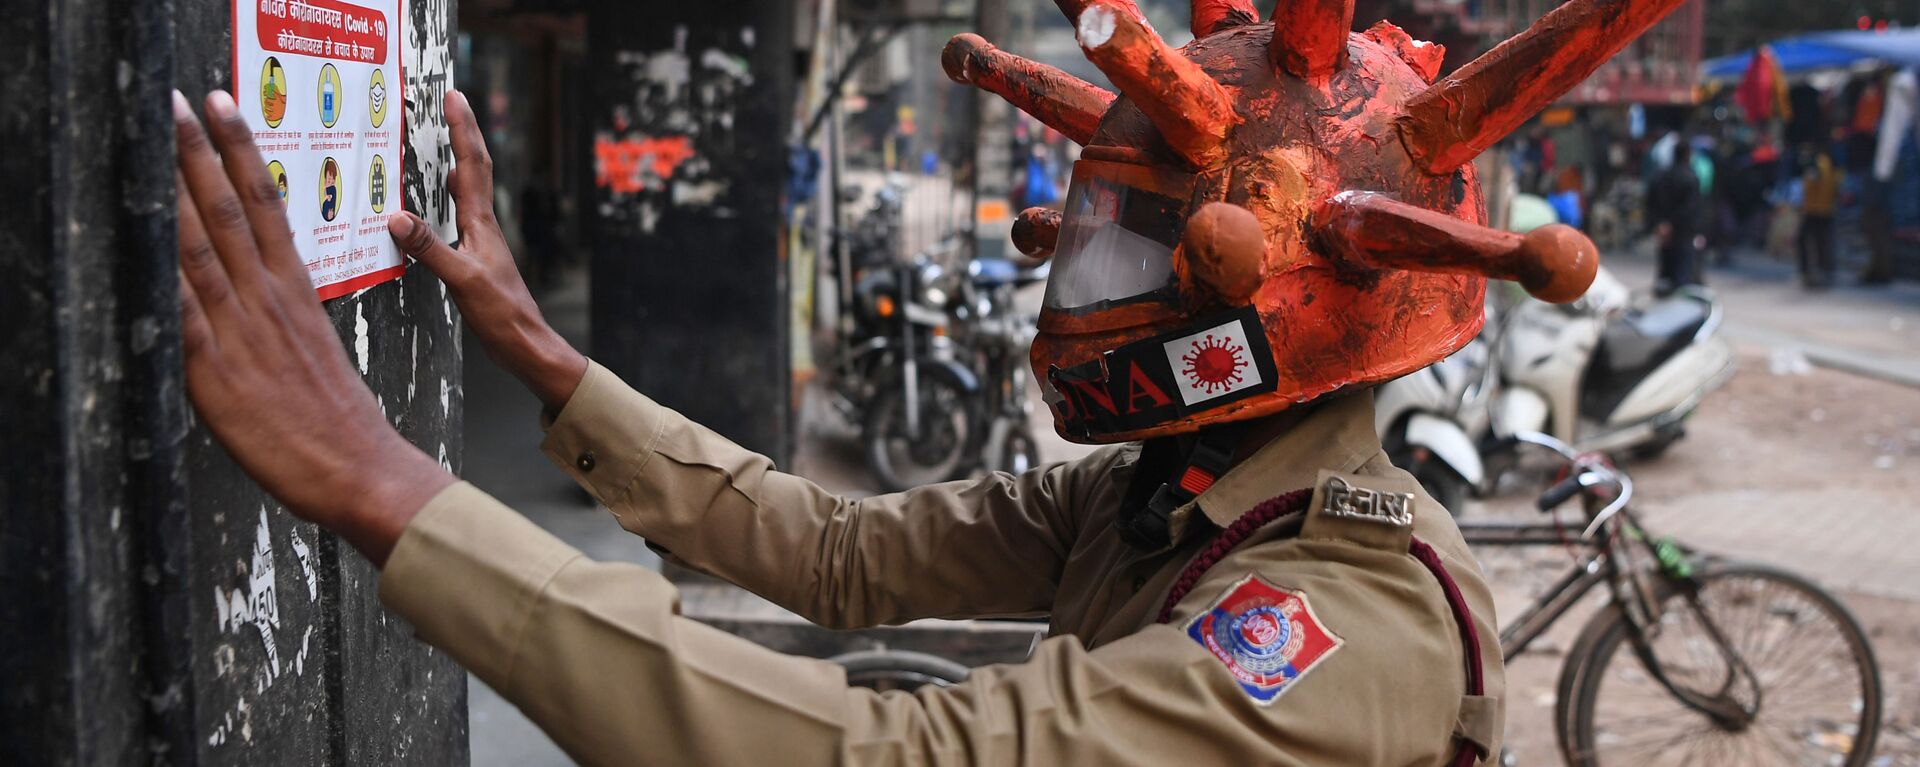  Волонтер гражданской обороны в шлеме Covid-19 в Нью-Дели, Индия - Sputnik Ўзбекистон, 1920, 21.04.2021